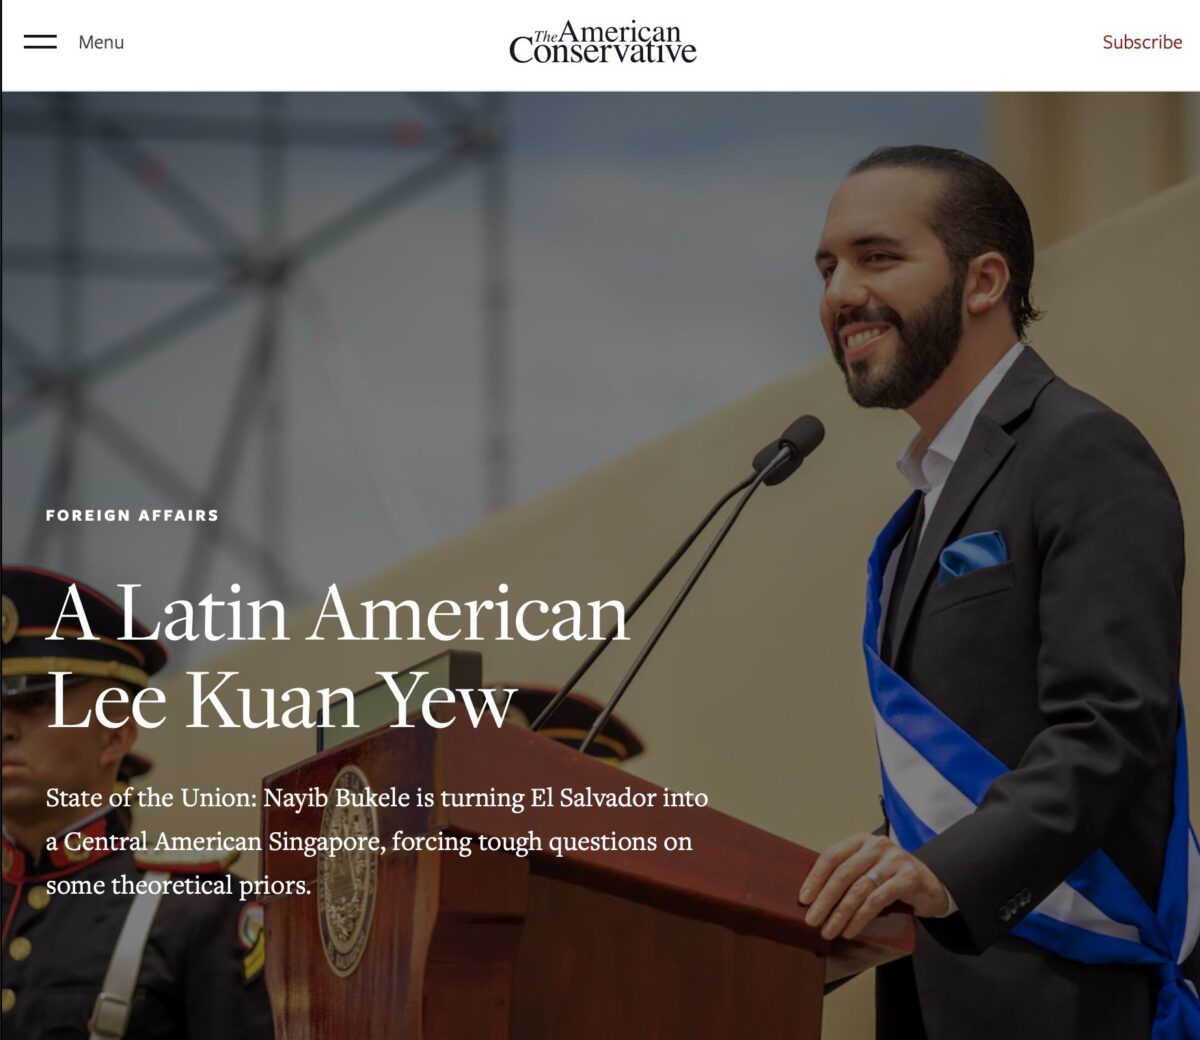 “나이브 부켈레는 라틴 아메리카의 리콴유”–미국 보수 언론 아메리칸 컨저버티브(ft. 비트코인)